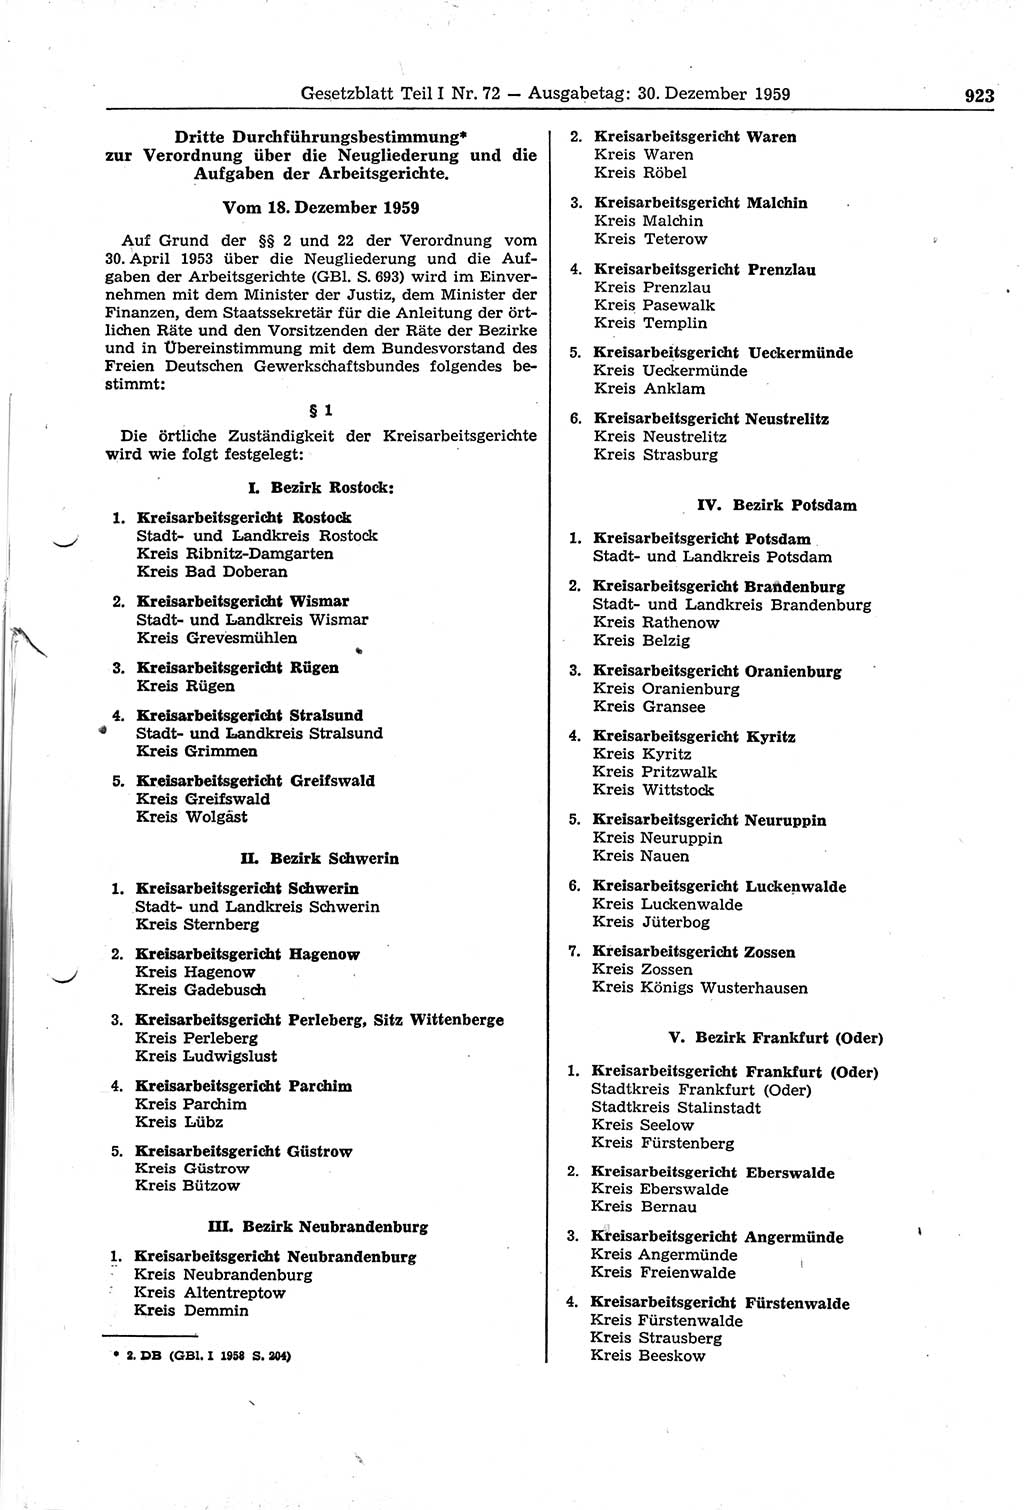 Gesetzblatt (GBl.) der Deutschen Demokratischen Republik (DDR) Teil Ⅰ 1959, Seite 923 (GBl. DDR Ⅰ 1959, S. 923)